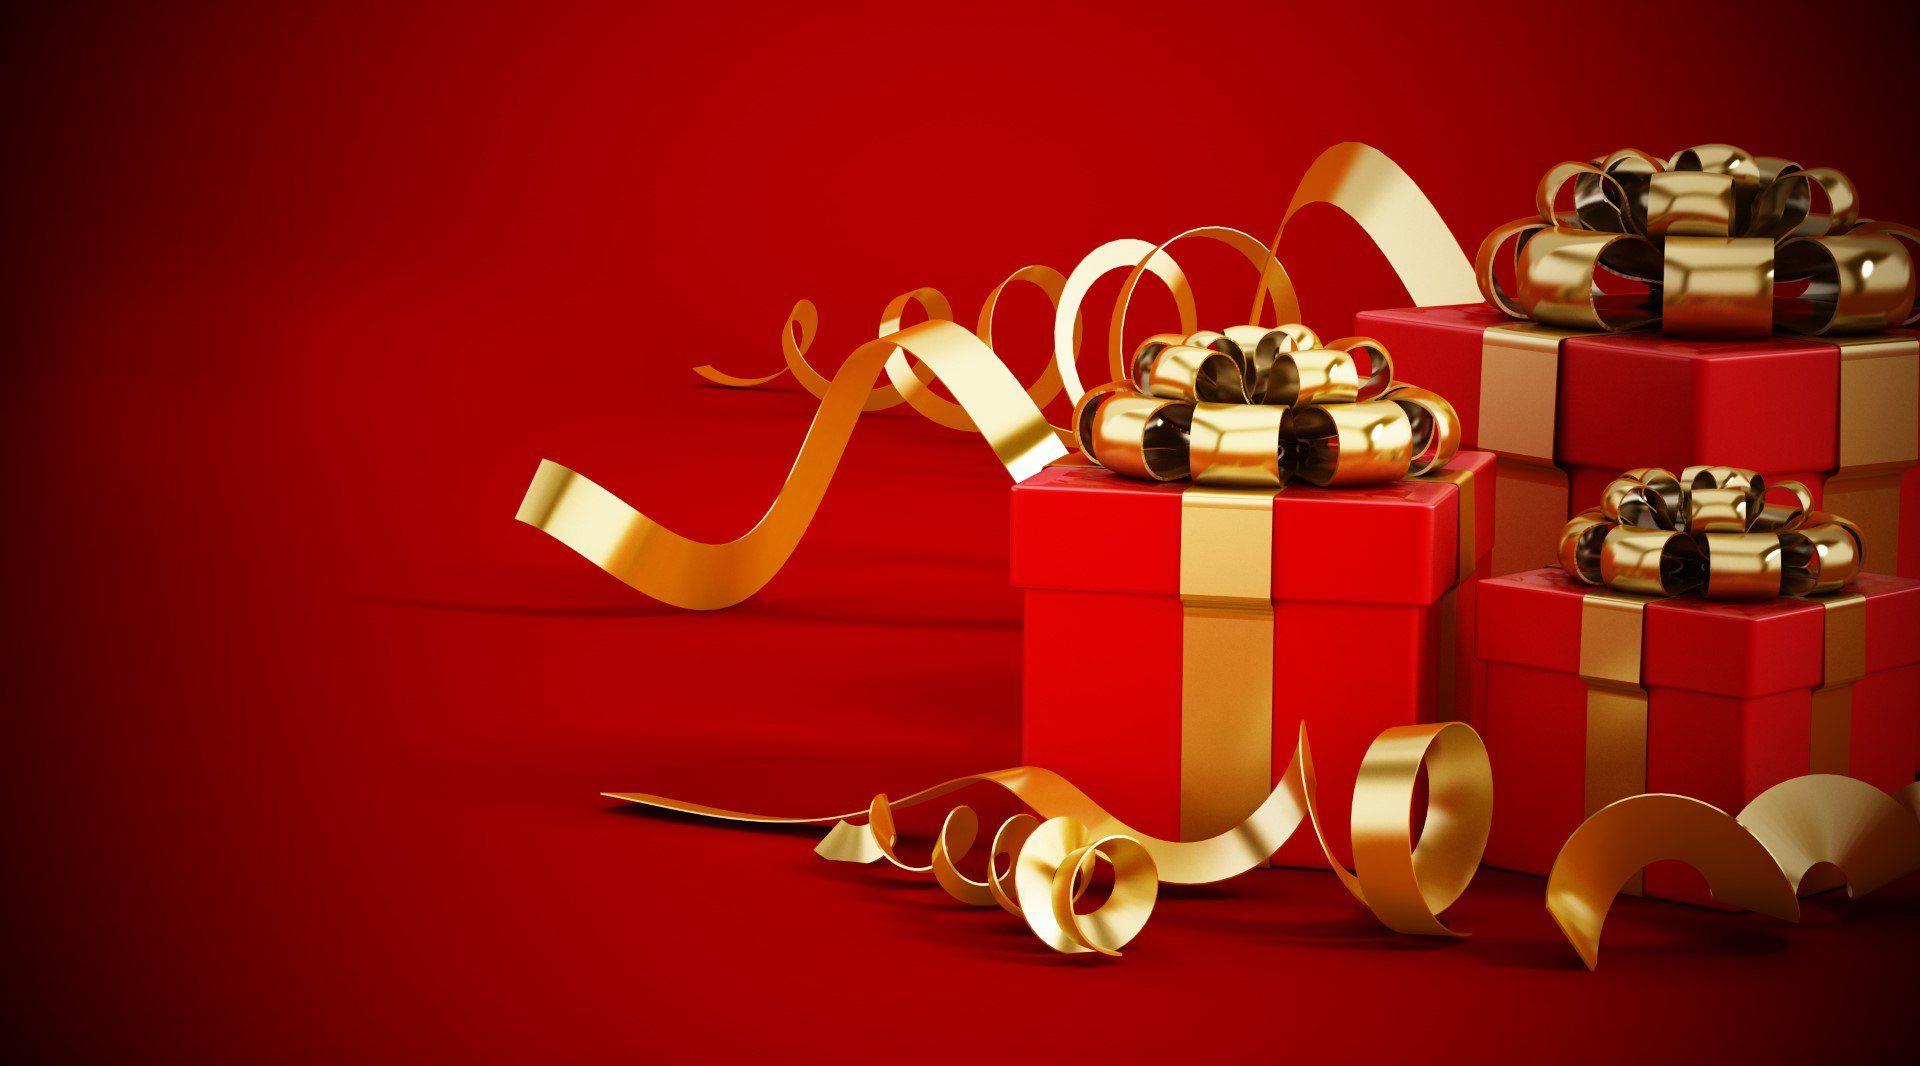 Caja de regalo - Sugerencias de regalos a medida para cualquier destinatario